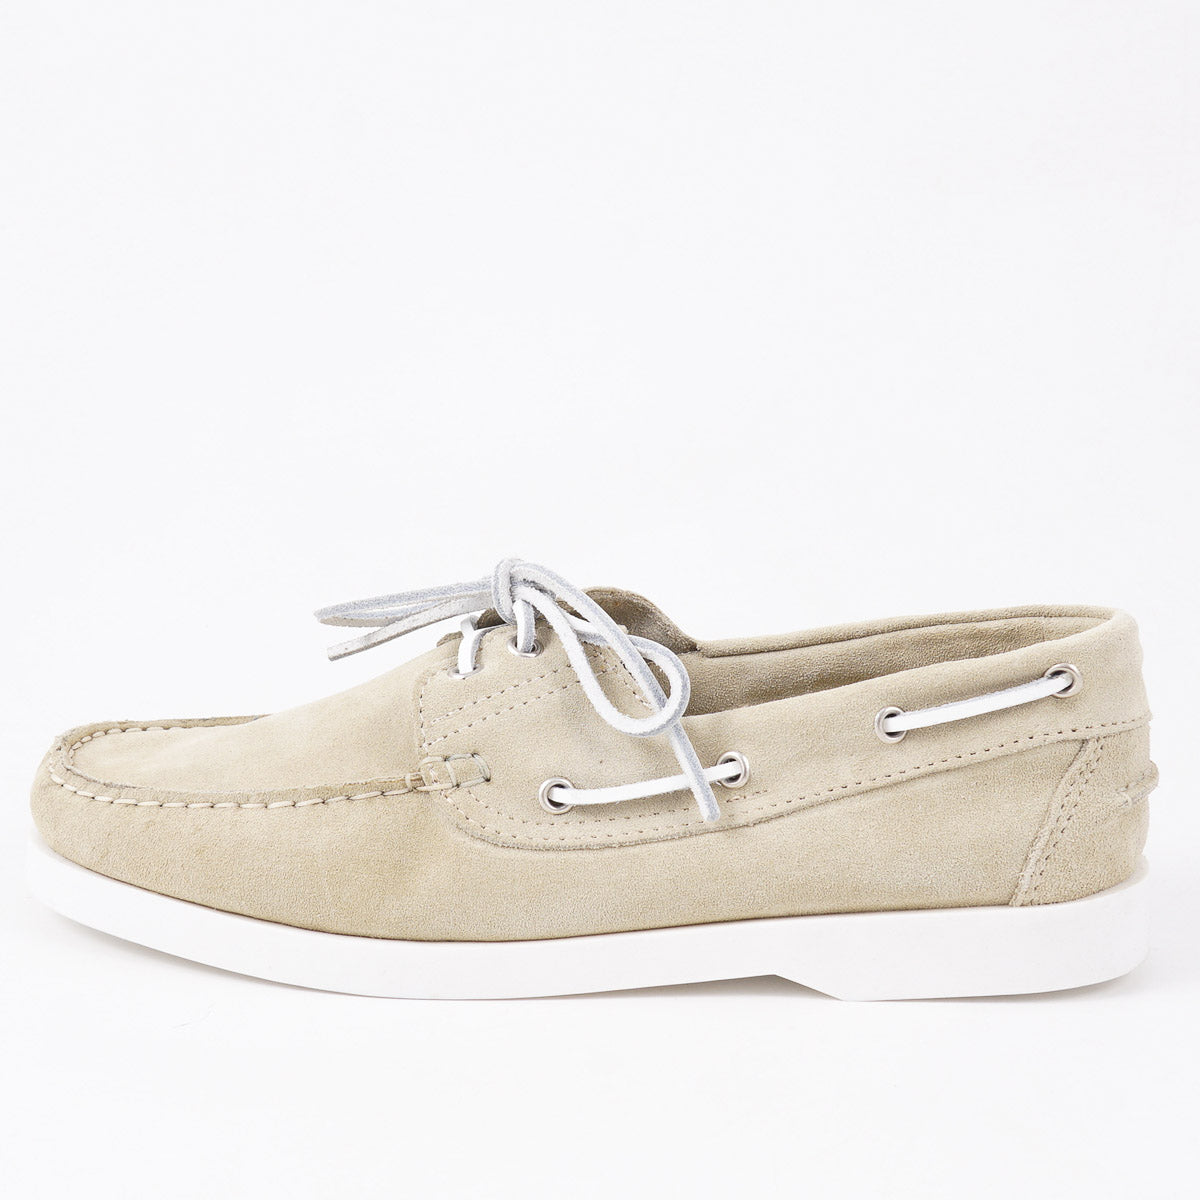 Sartorio Calf Suede Boat Shoes - Top Shelf Apparel